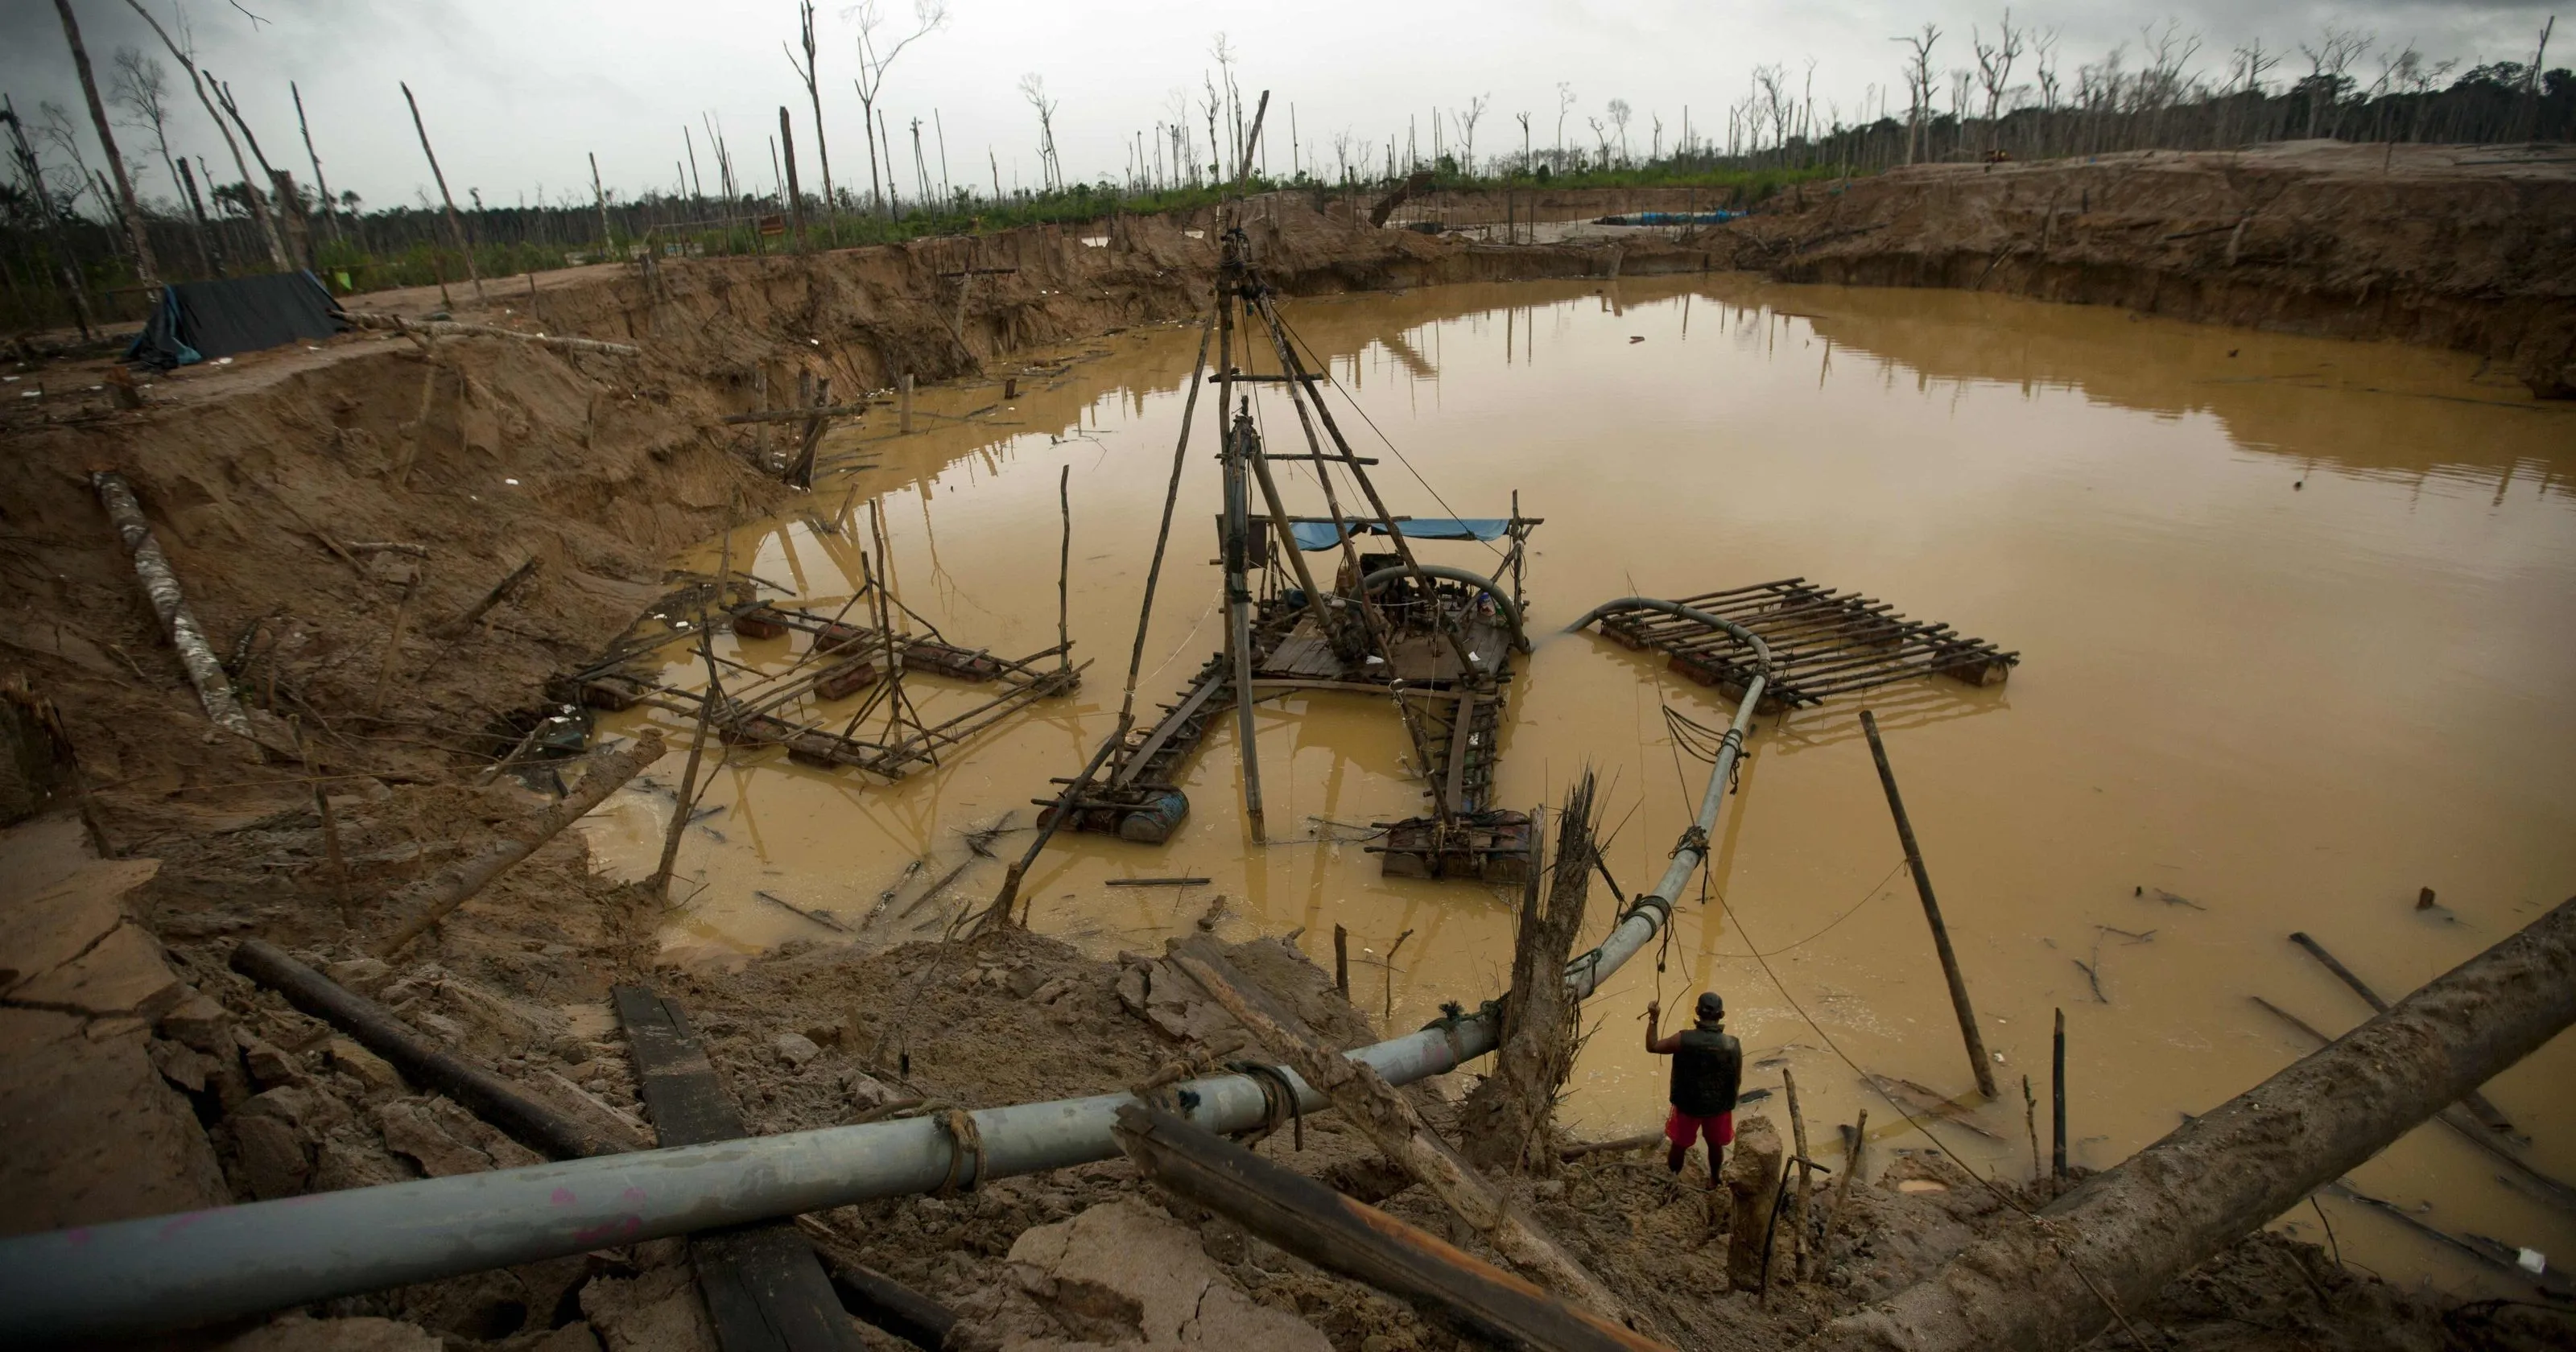 Khai thác khoáng sản trái phép tràn lan, đặc biệt là vàng, là một vấn đề nhức nhối Chính phủ Peru cần giải quyết (Ảnh: Internet)